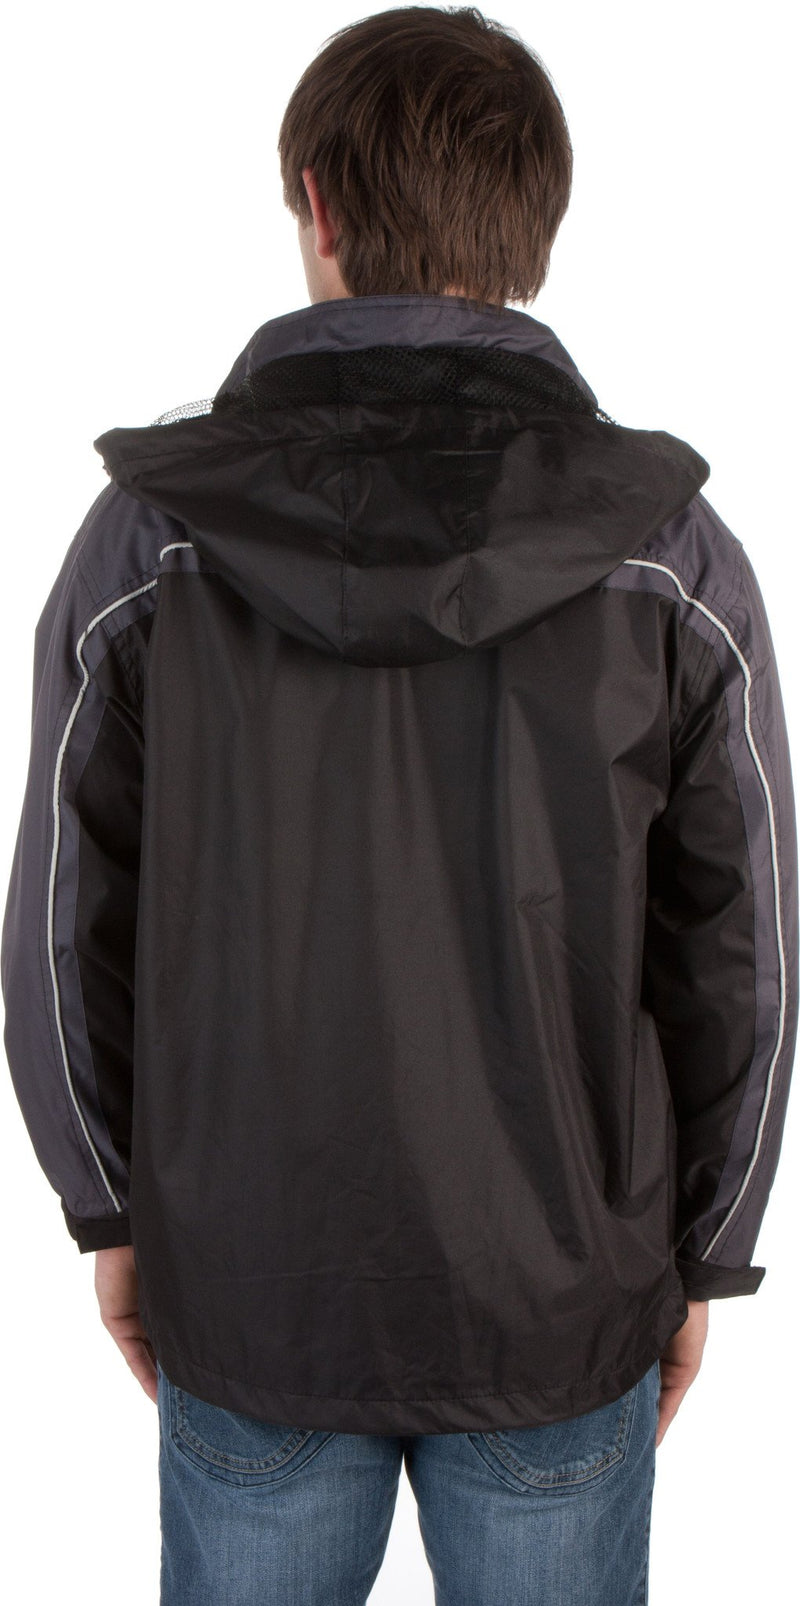 Adult Two-Tone Full-Zip Water-Resistant Hooded Windbreaker / Rain Jacket ( 2 Colors )